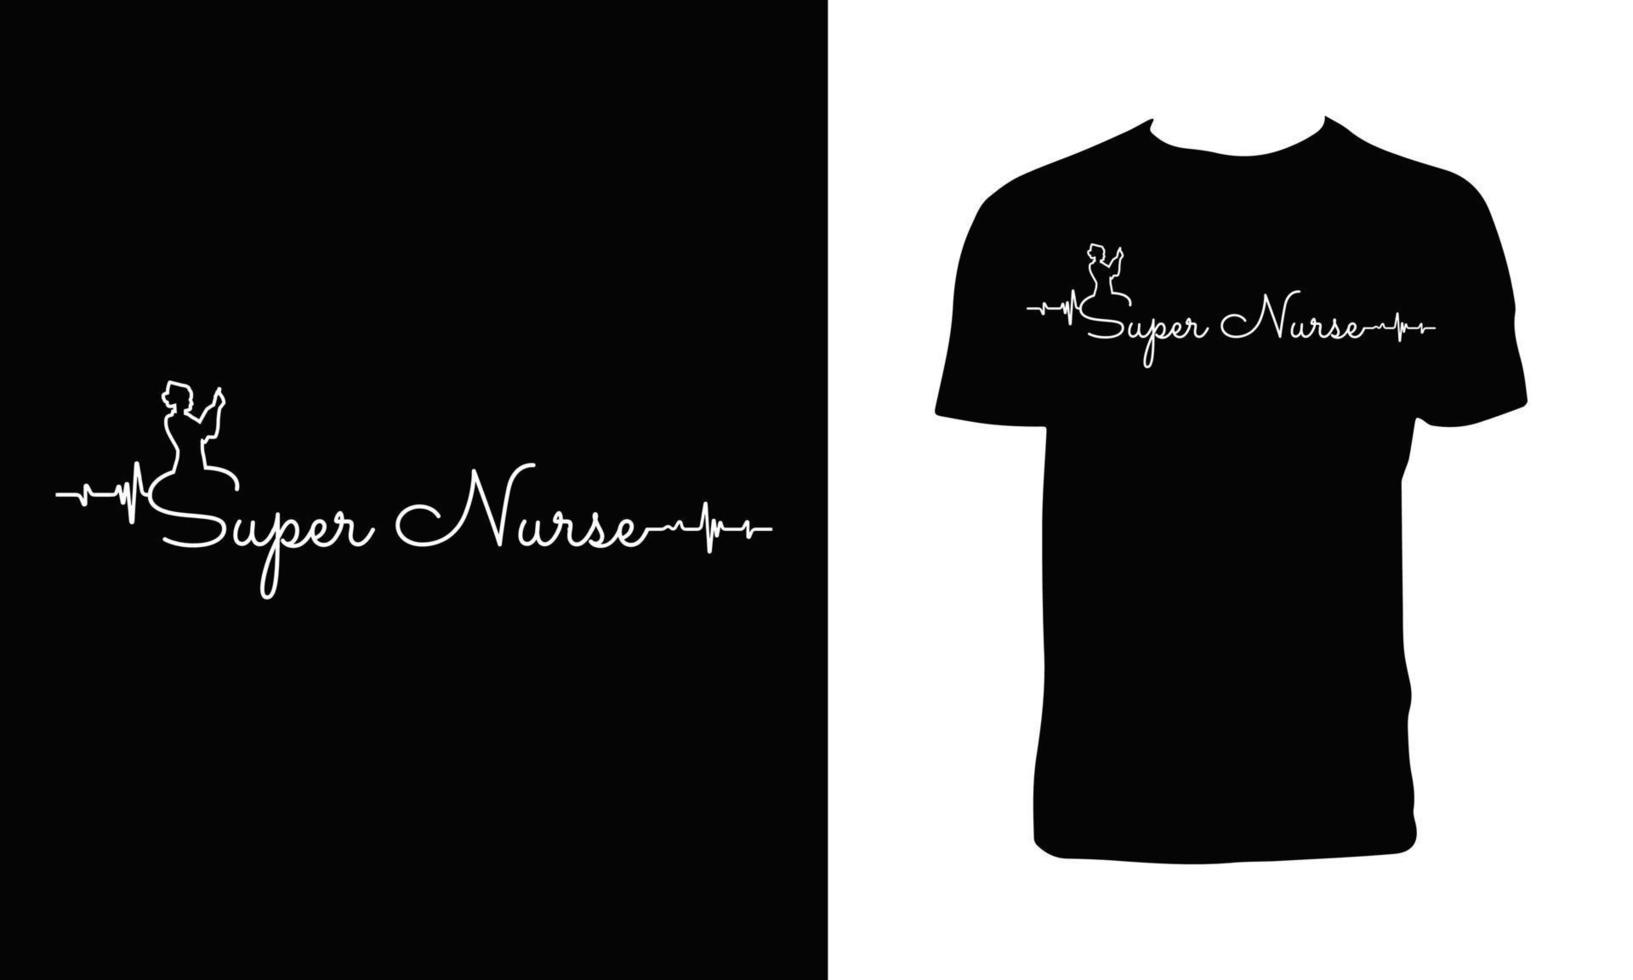 Nursing Vector T Shirt Design.